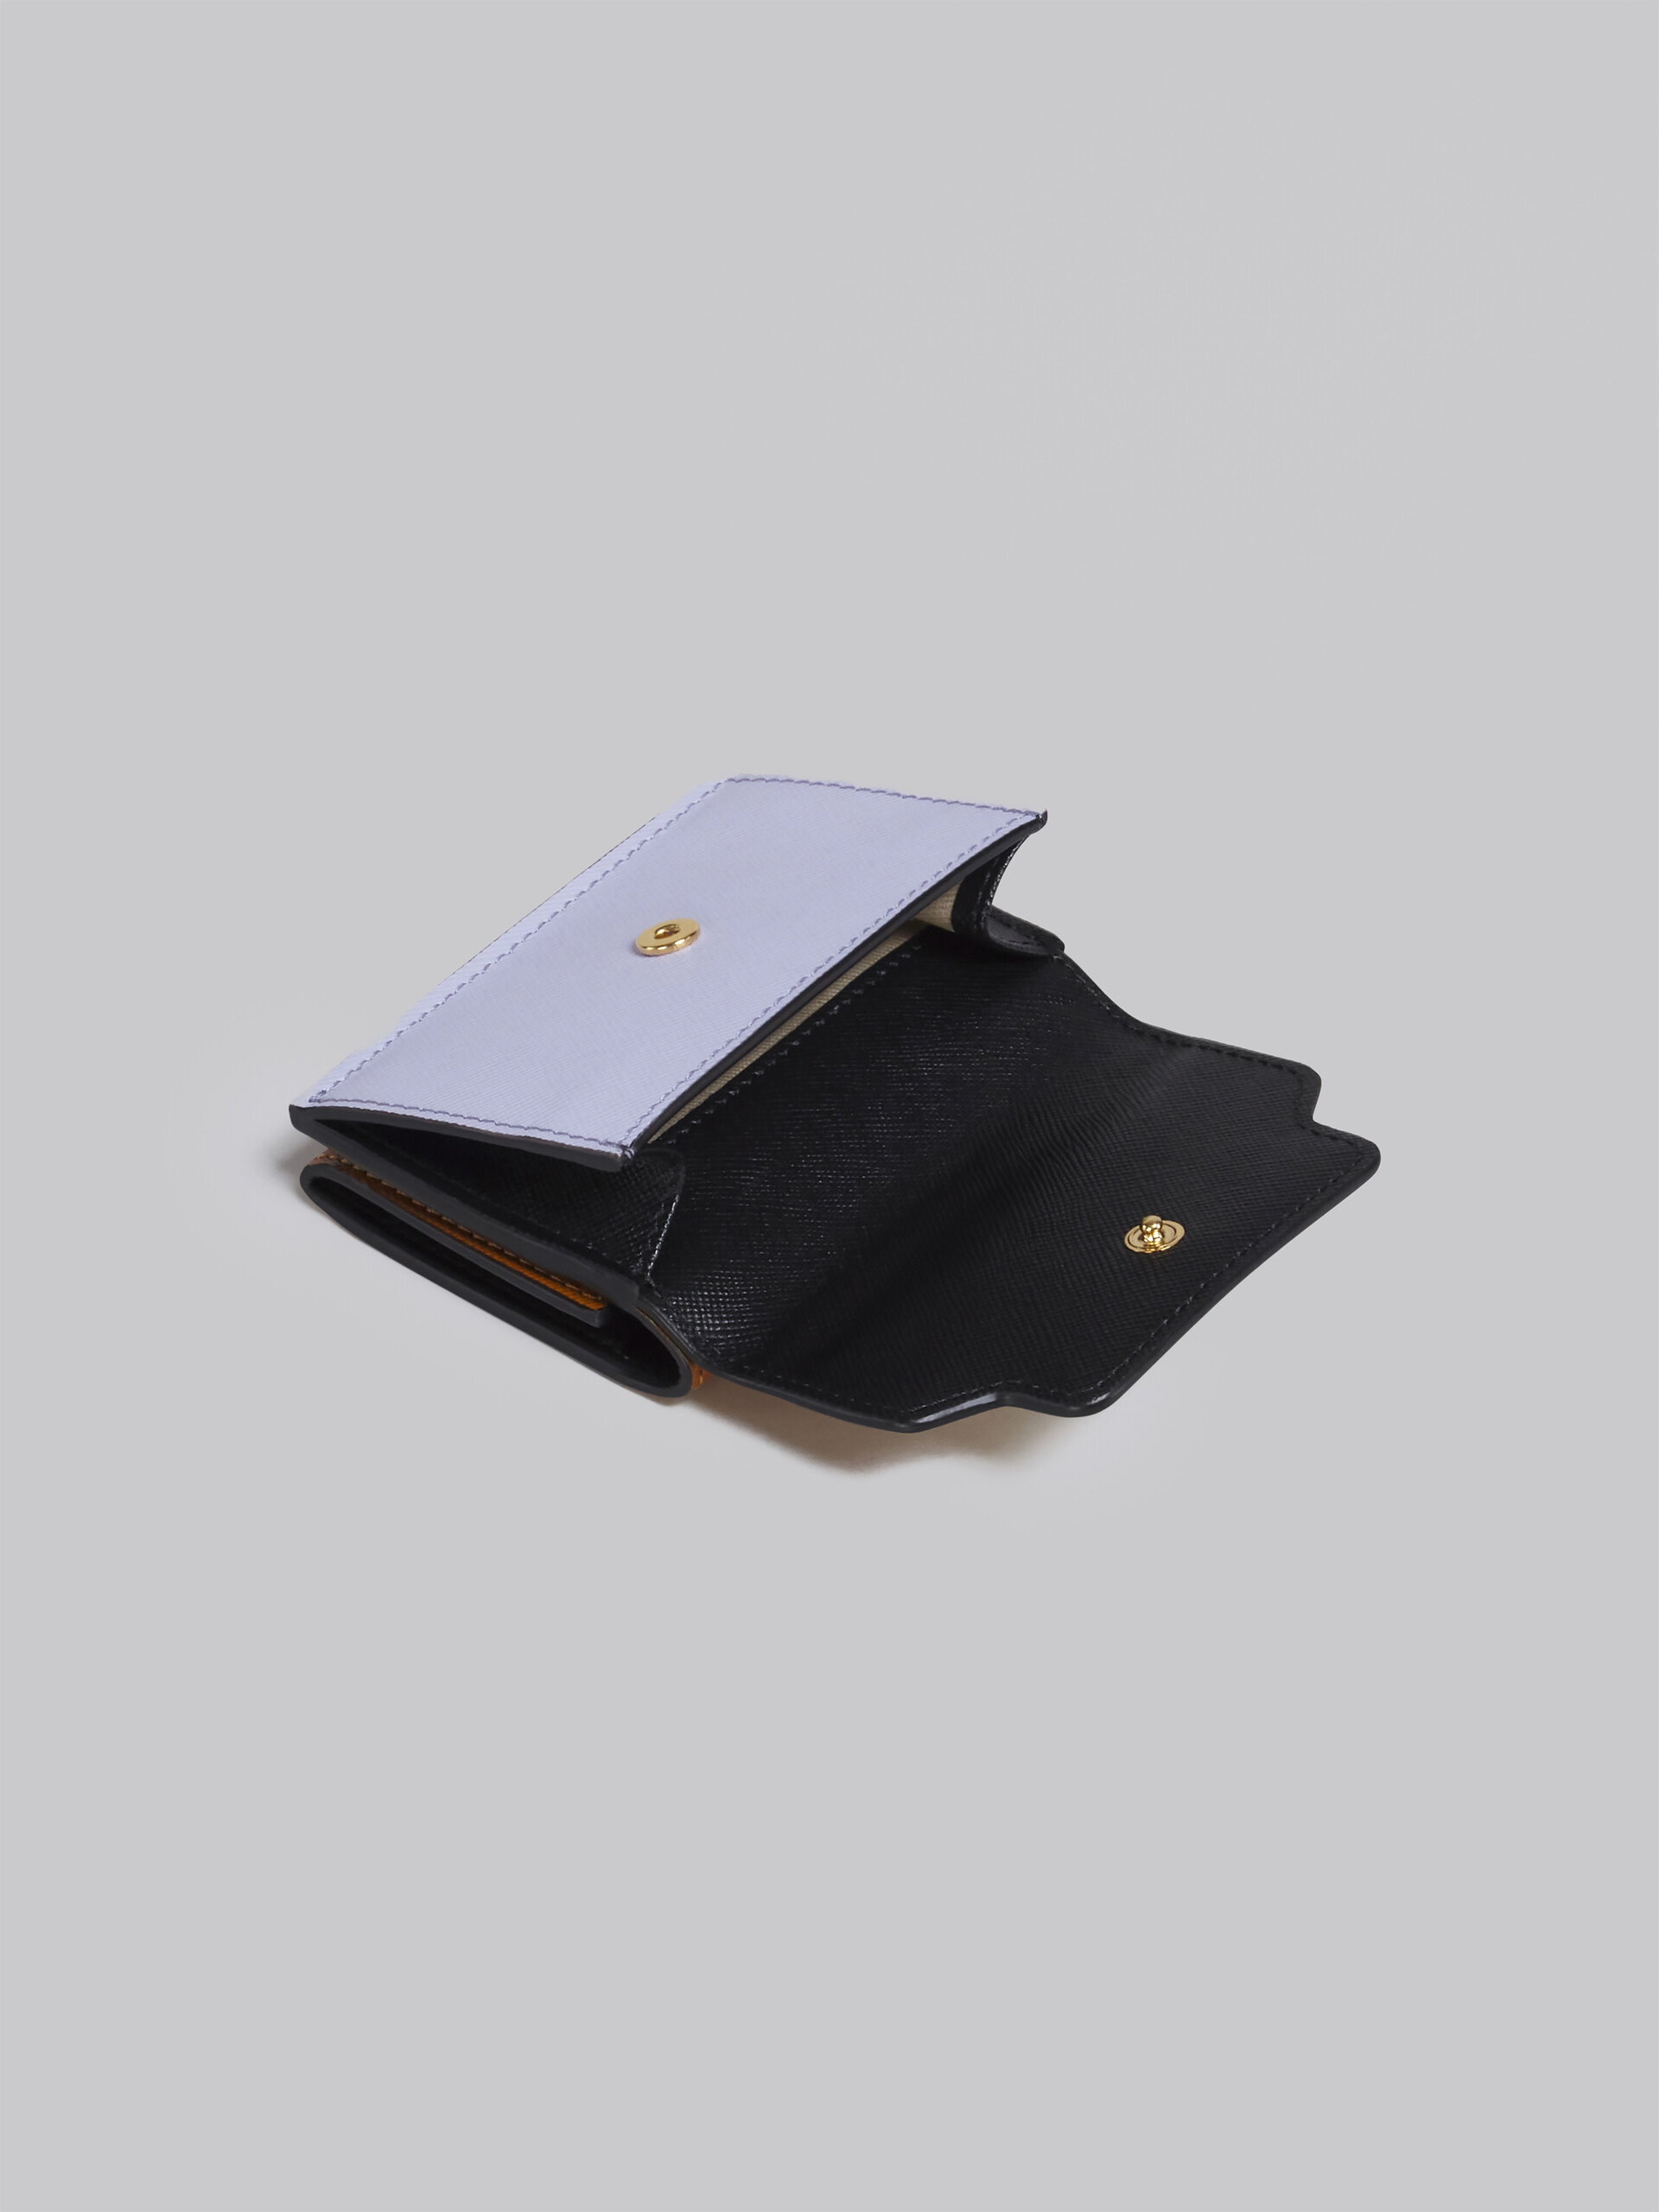 ブラウン ライラック・ブラック サフィアーノレザー製 三つ折りウォレット - 財布 - Image 5